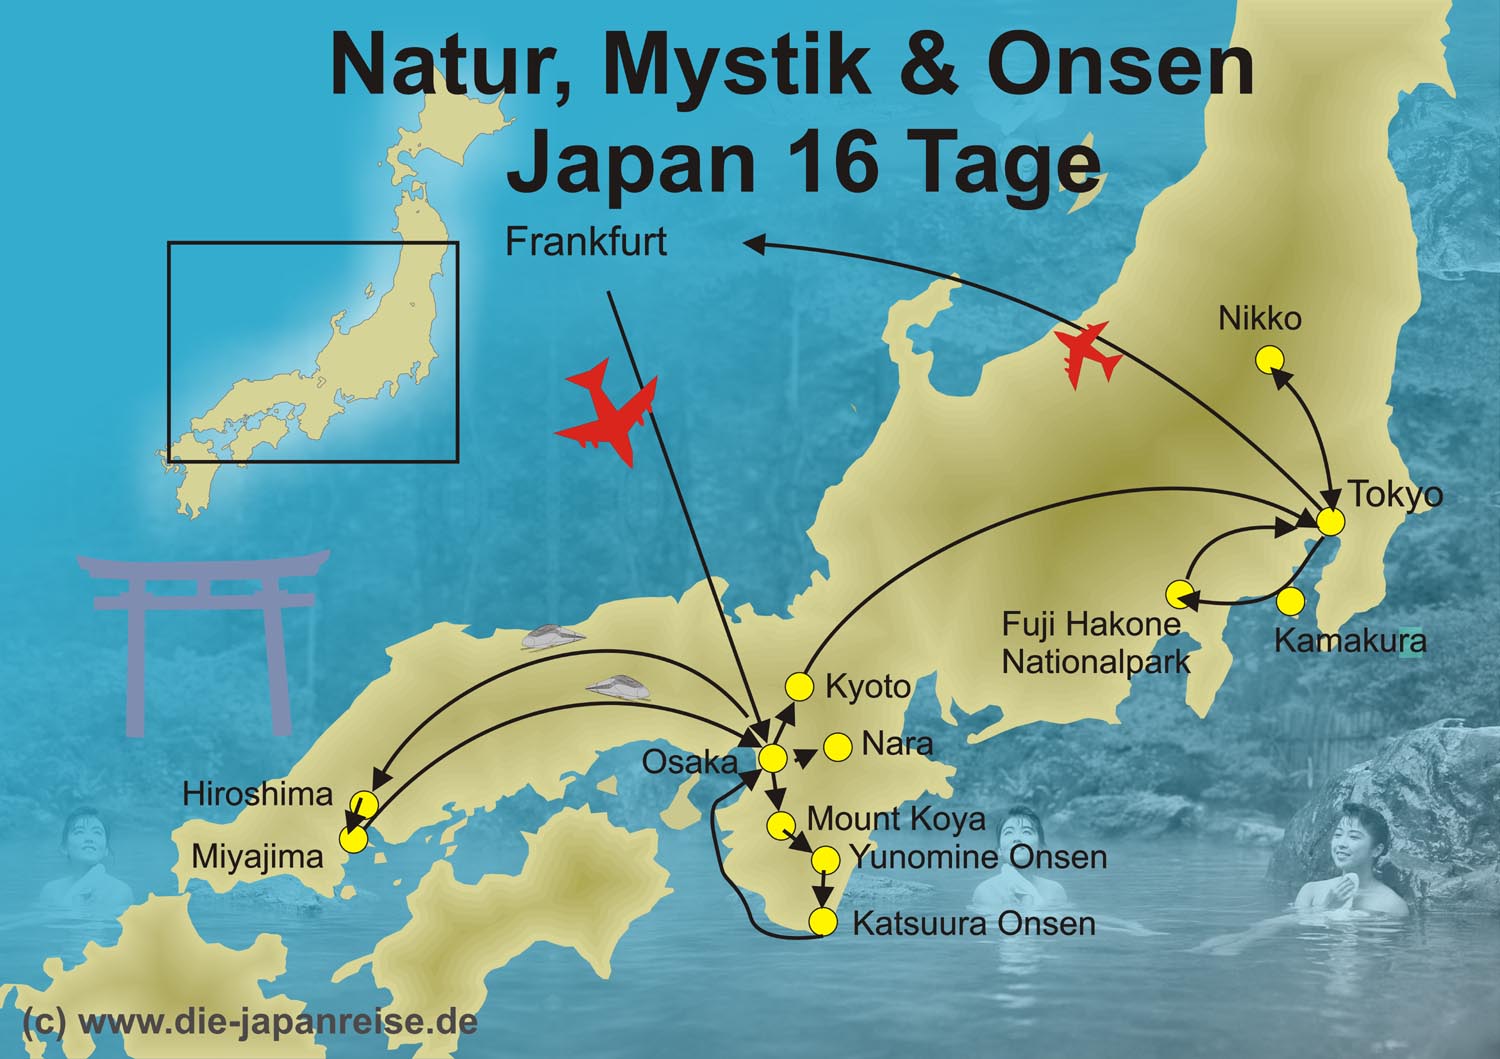 Rundreise Route der Mystik Tour mit Tempelaufenthalt, traditionellem Ryokan und deutschem Reiseleiter.